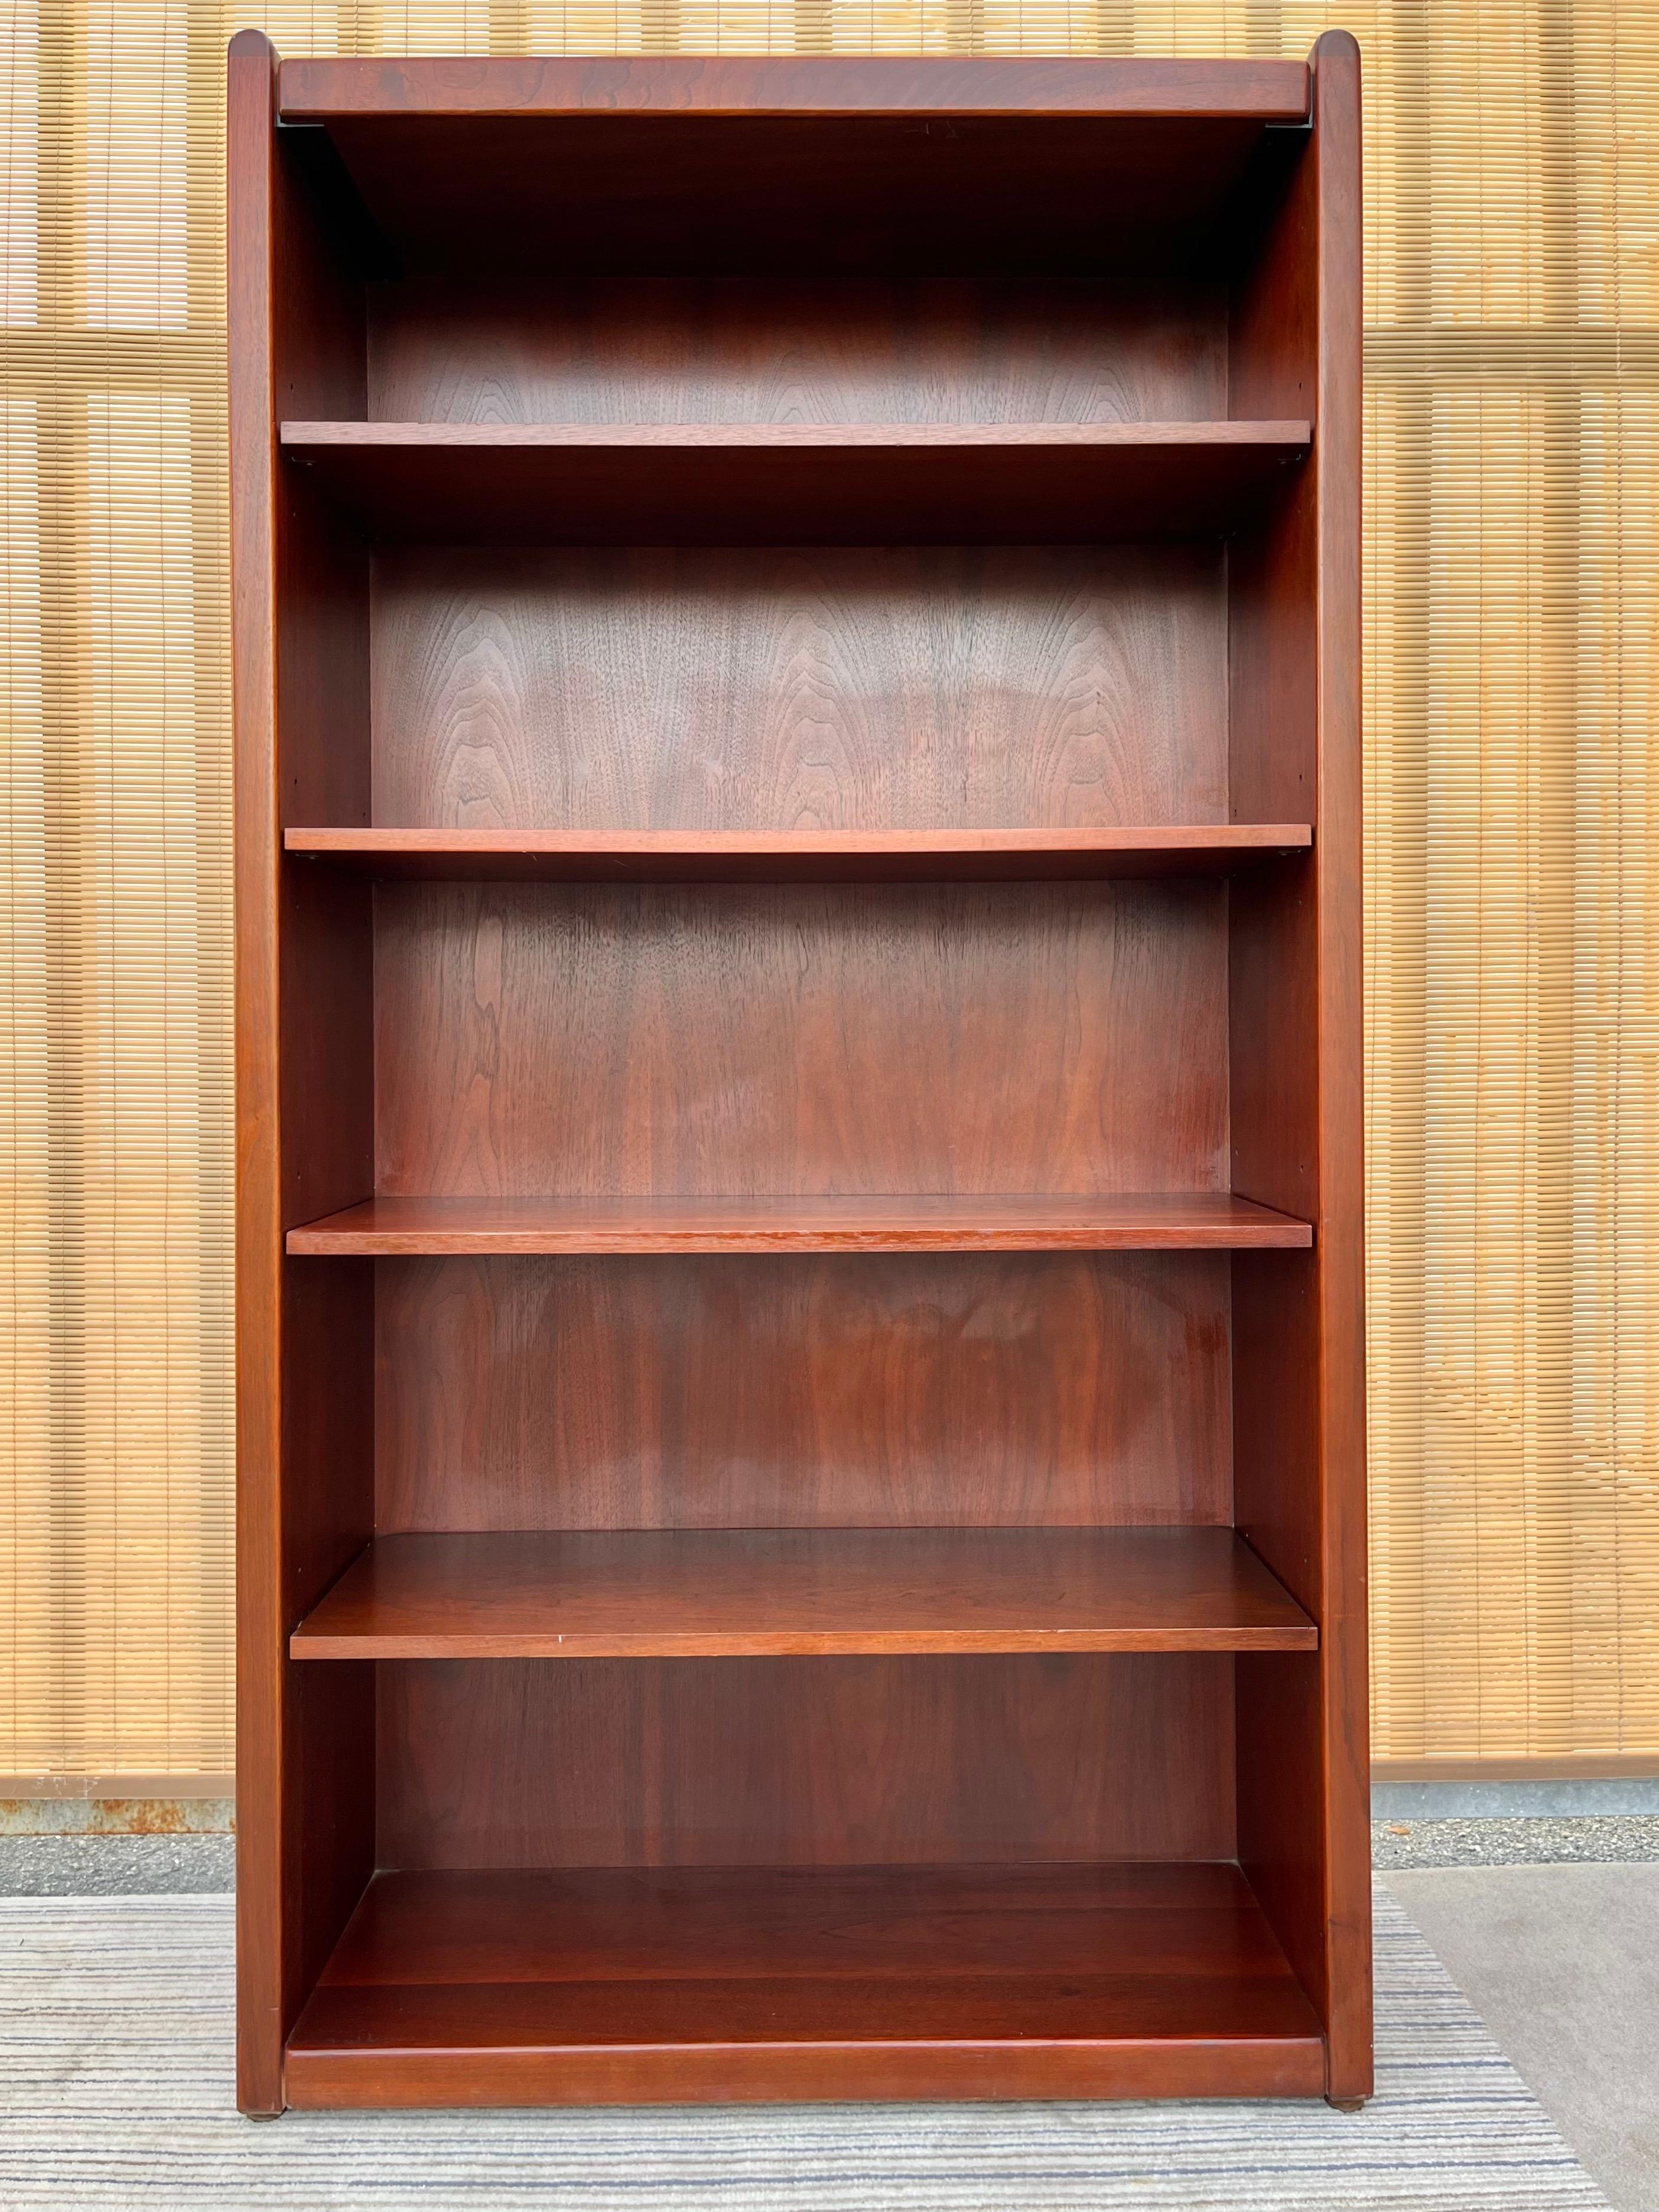 Bibliothèque ouverte à 5 étagères de la fin du 20e siècle par Kimball Furniture. Vers 1990. 
Cette bibliothèque ouverte robuste présente un design aux lignes épurées avec des bords supérieurs arrondis, quatre étagères en bois réglables avec des